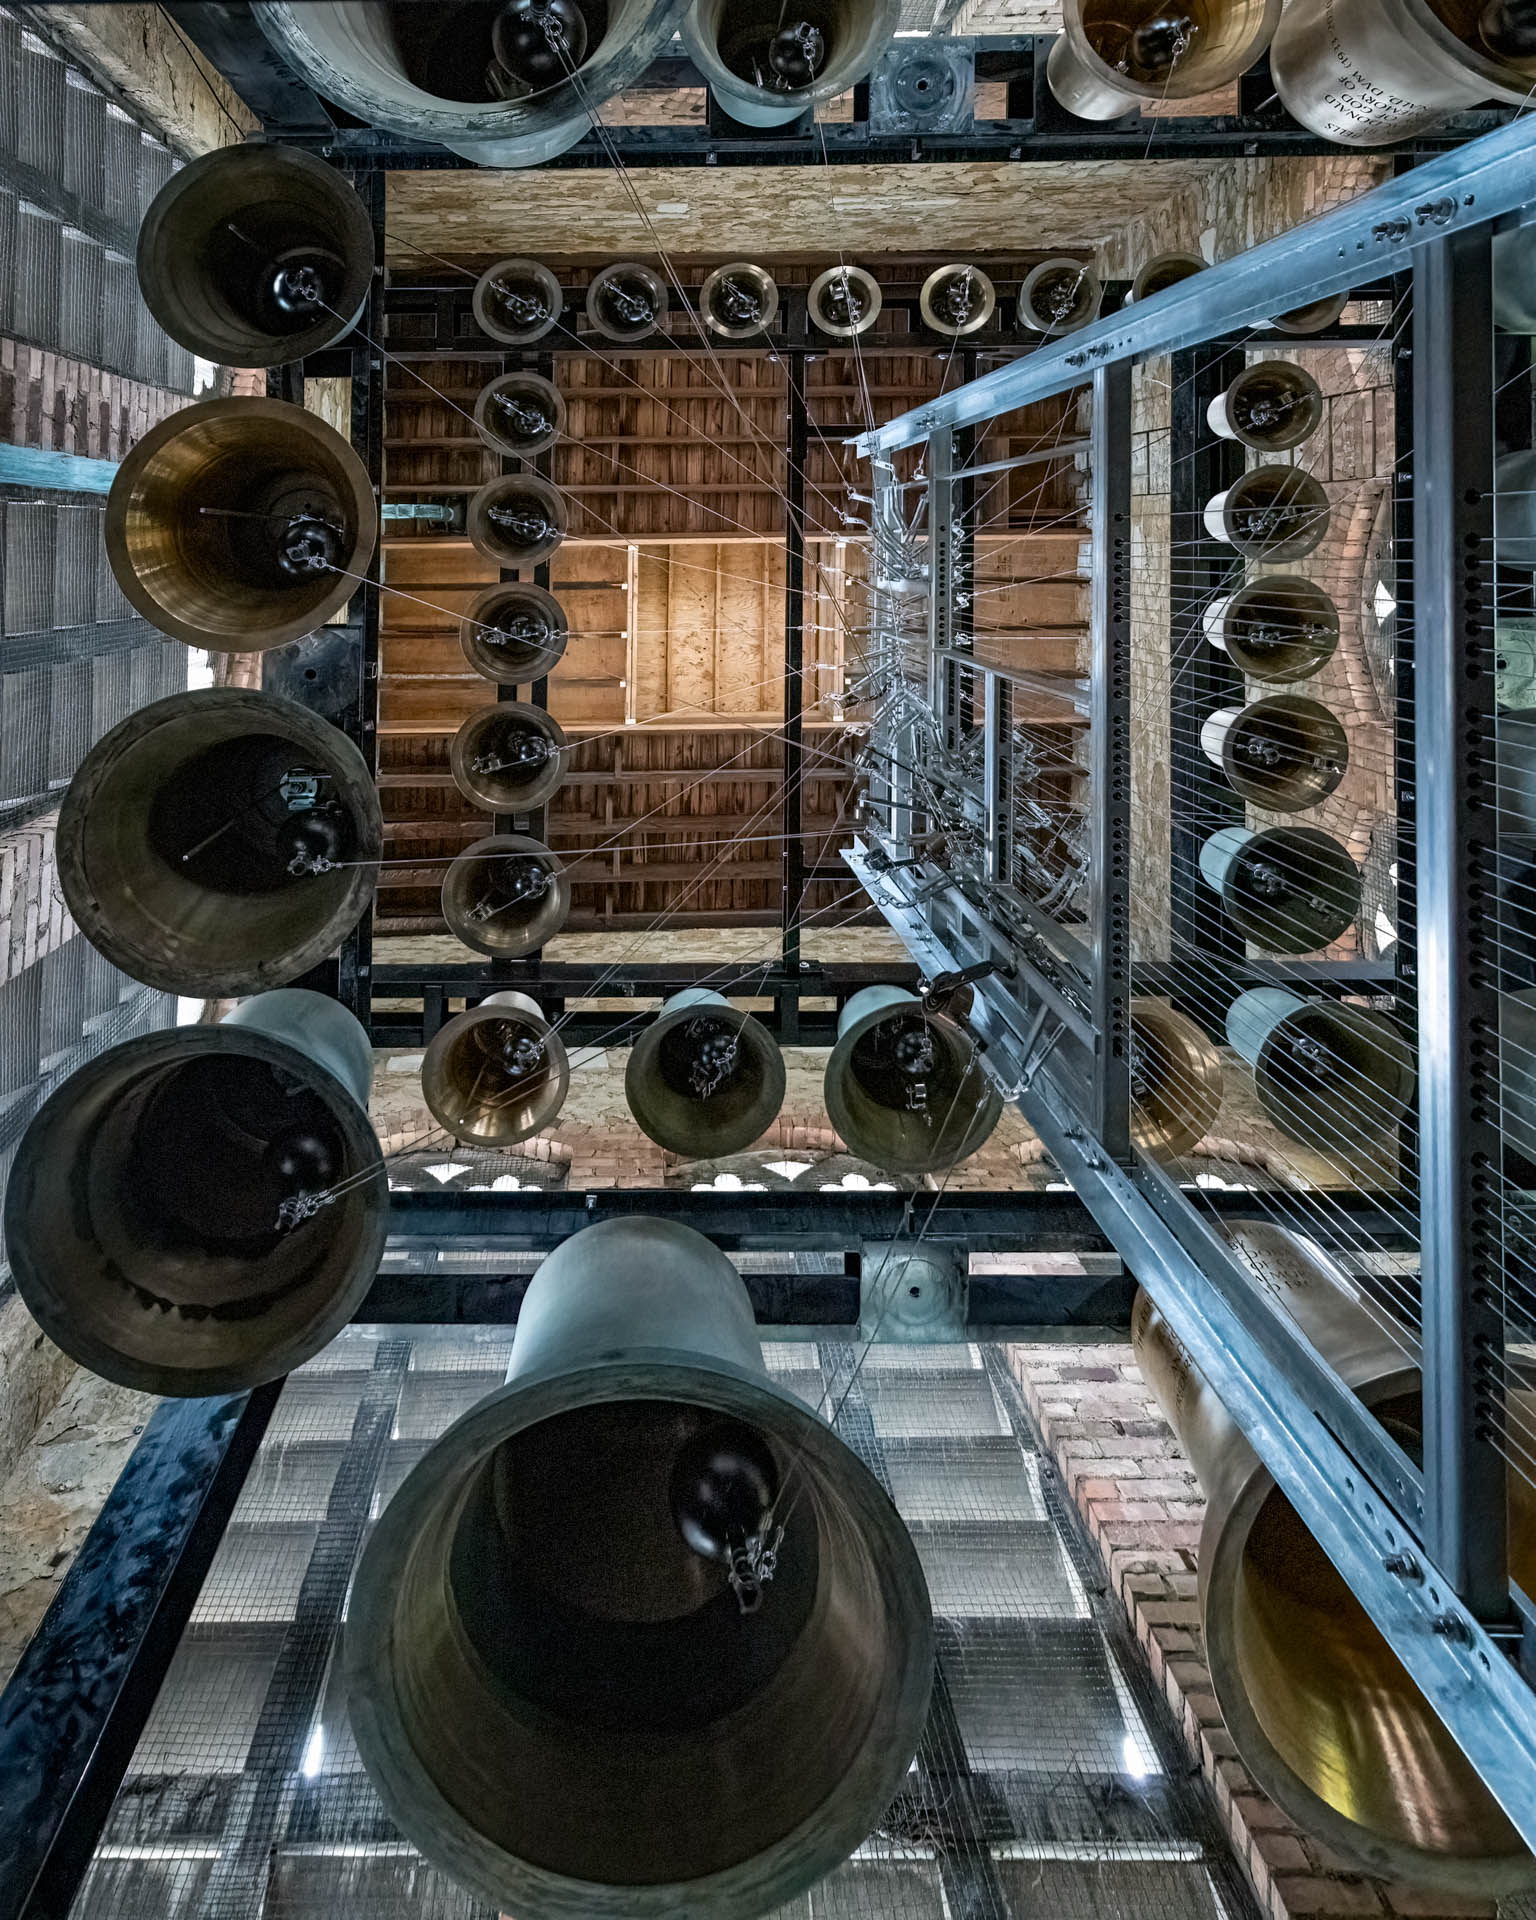 37 bells in the Belfry